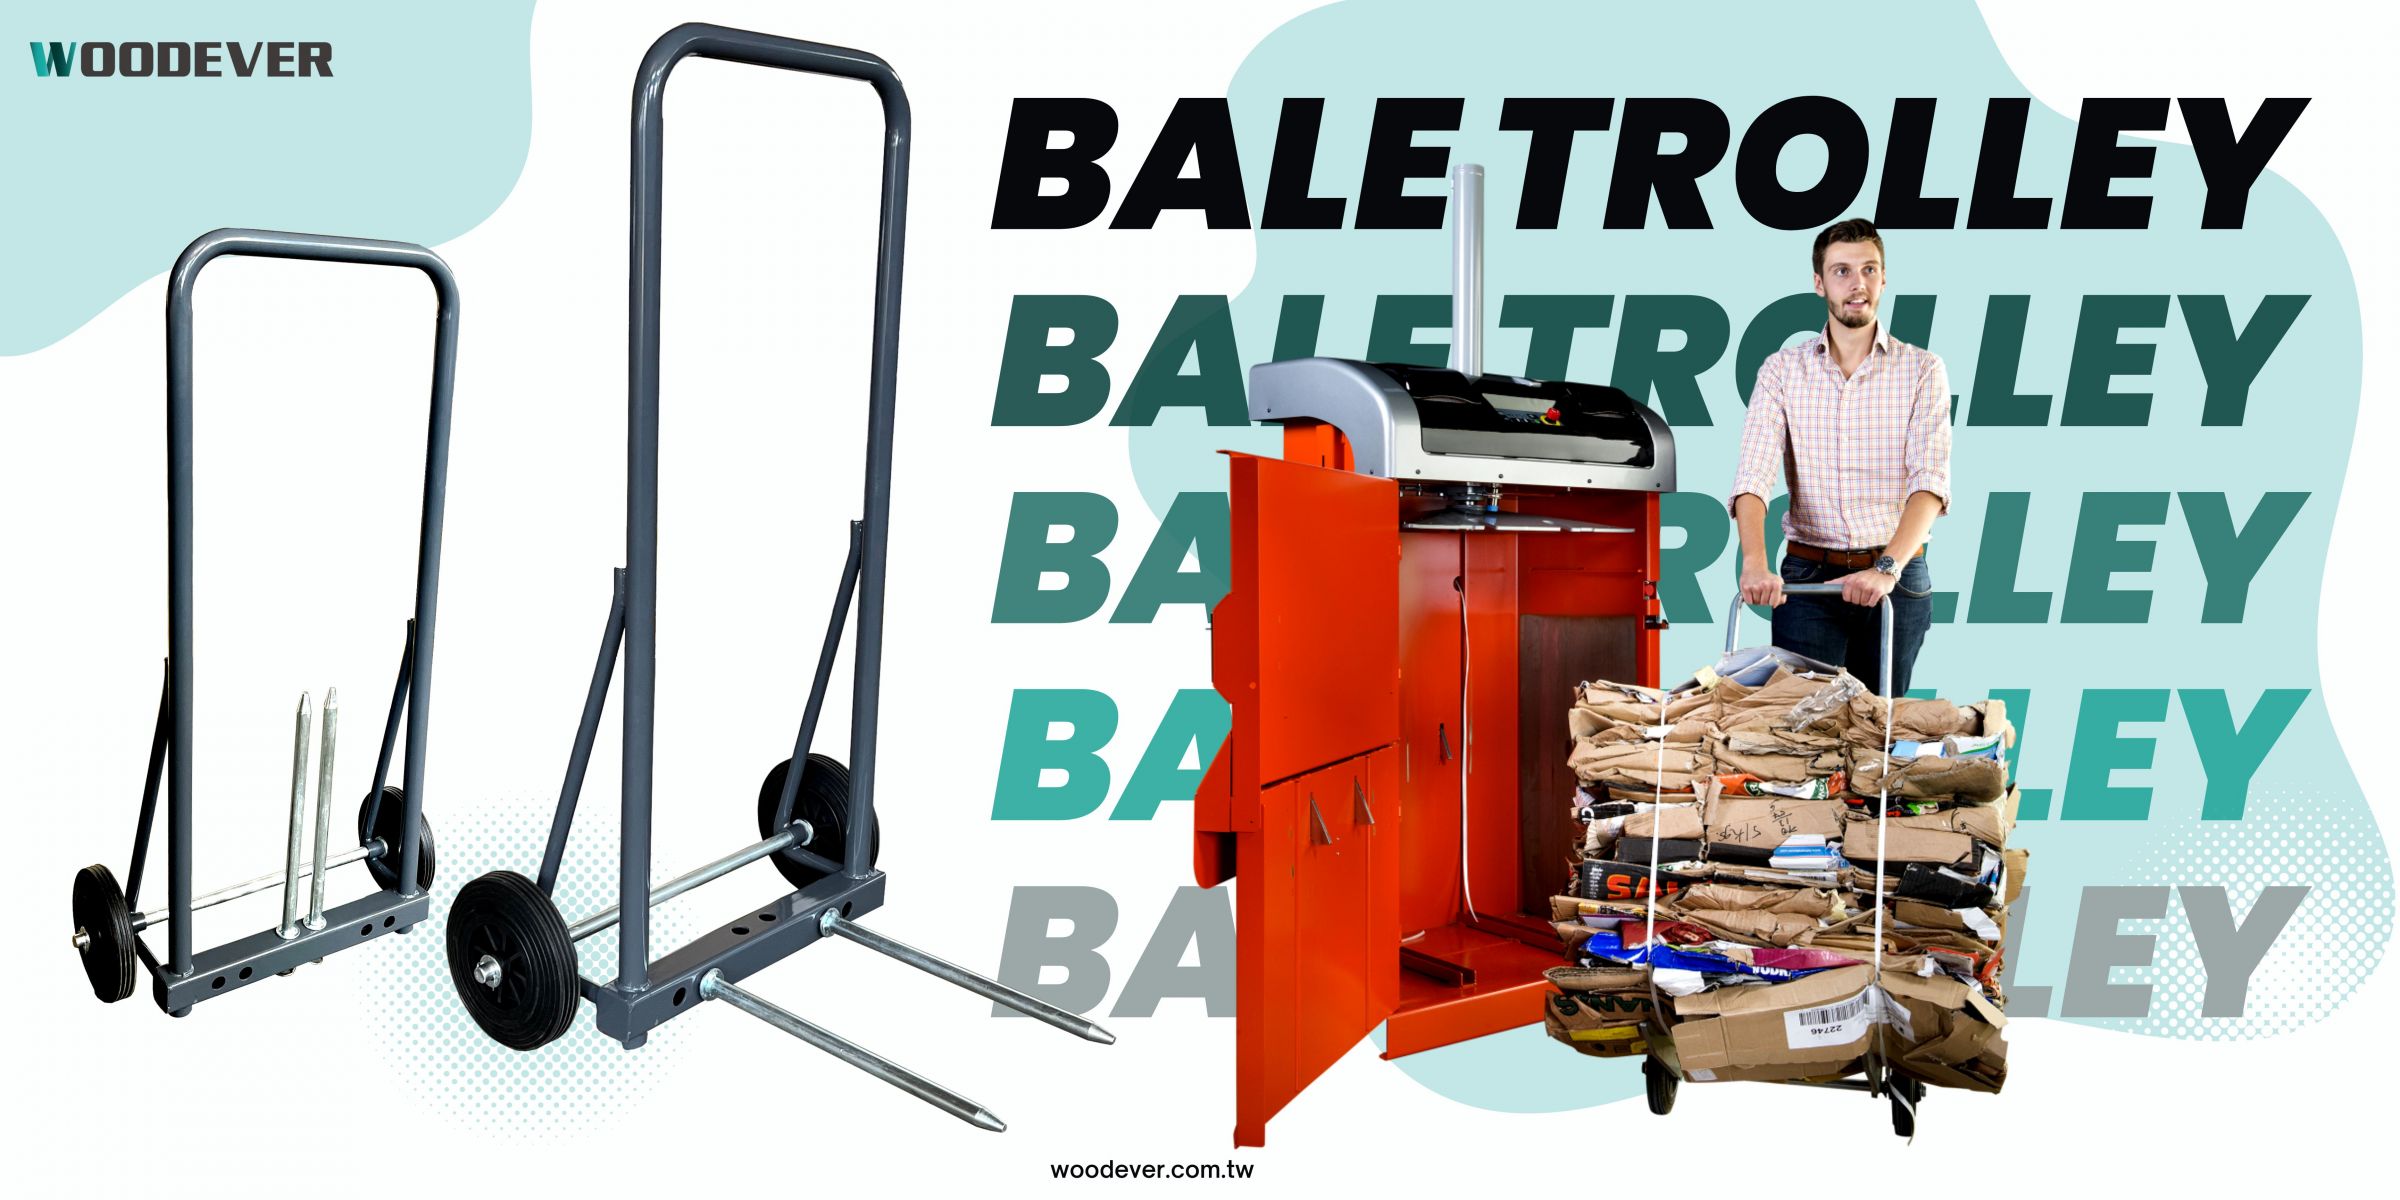 Troli yang disesuaikan ini dikenali sebagai TROLI BALE kerana ia digunakan bersama mesin baler. Fungsi trolly bale adalah untuk menarik tumpukan barang (biasanya kadbod, plastik, kertas, atau tin) dari mesin baler dan mengangkutnya ke gudang atau stor.